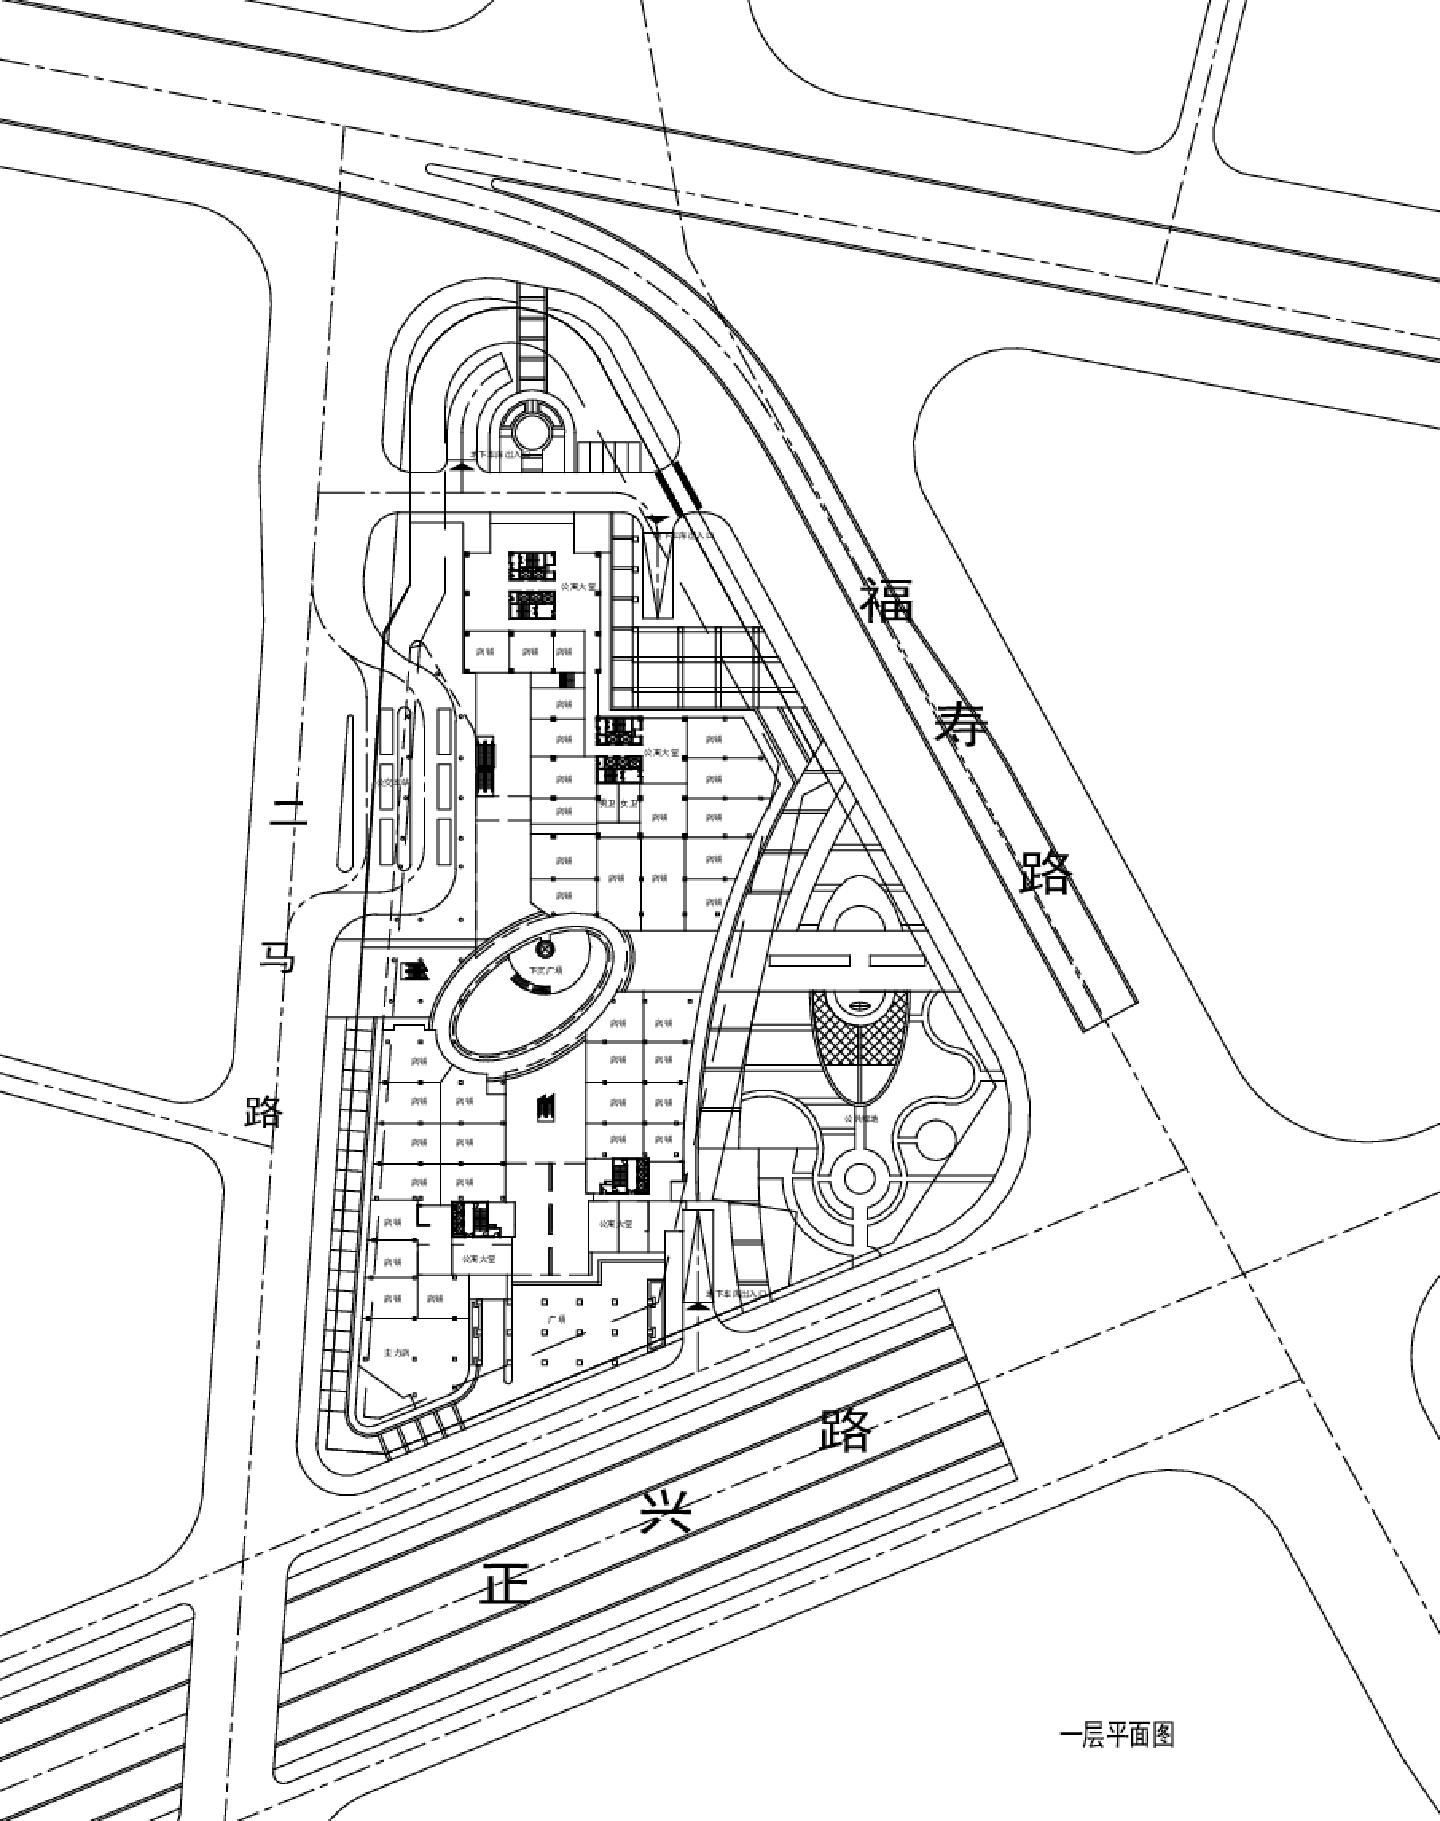 郑州二马路地块开发项目-方案一裙房建施平面CAD图